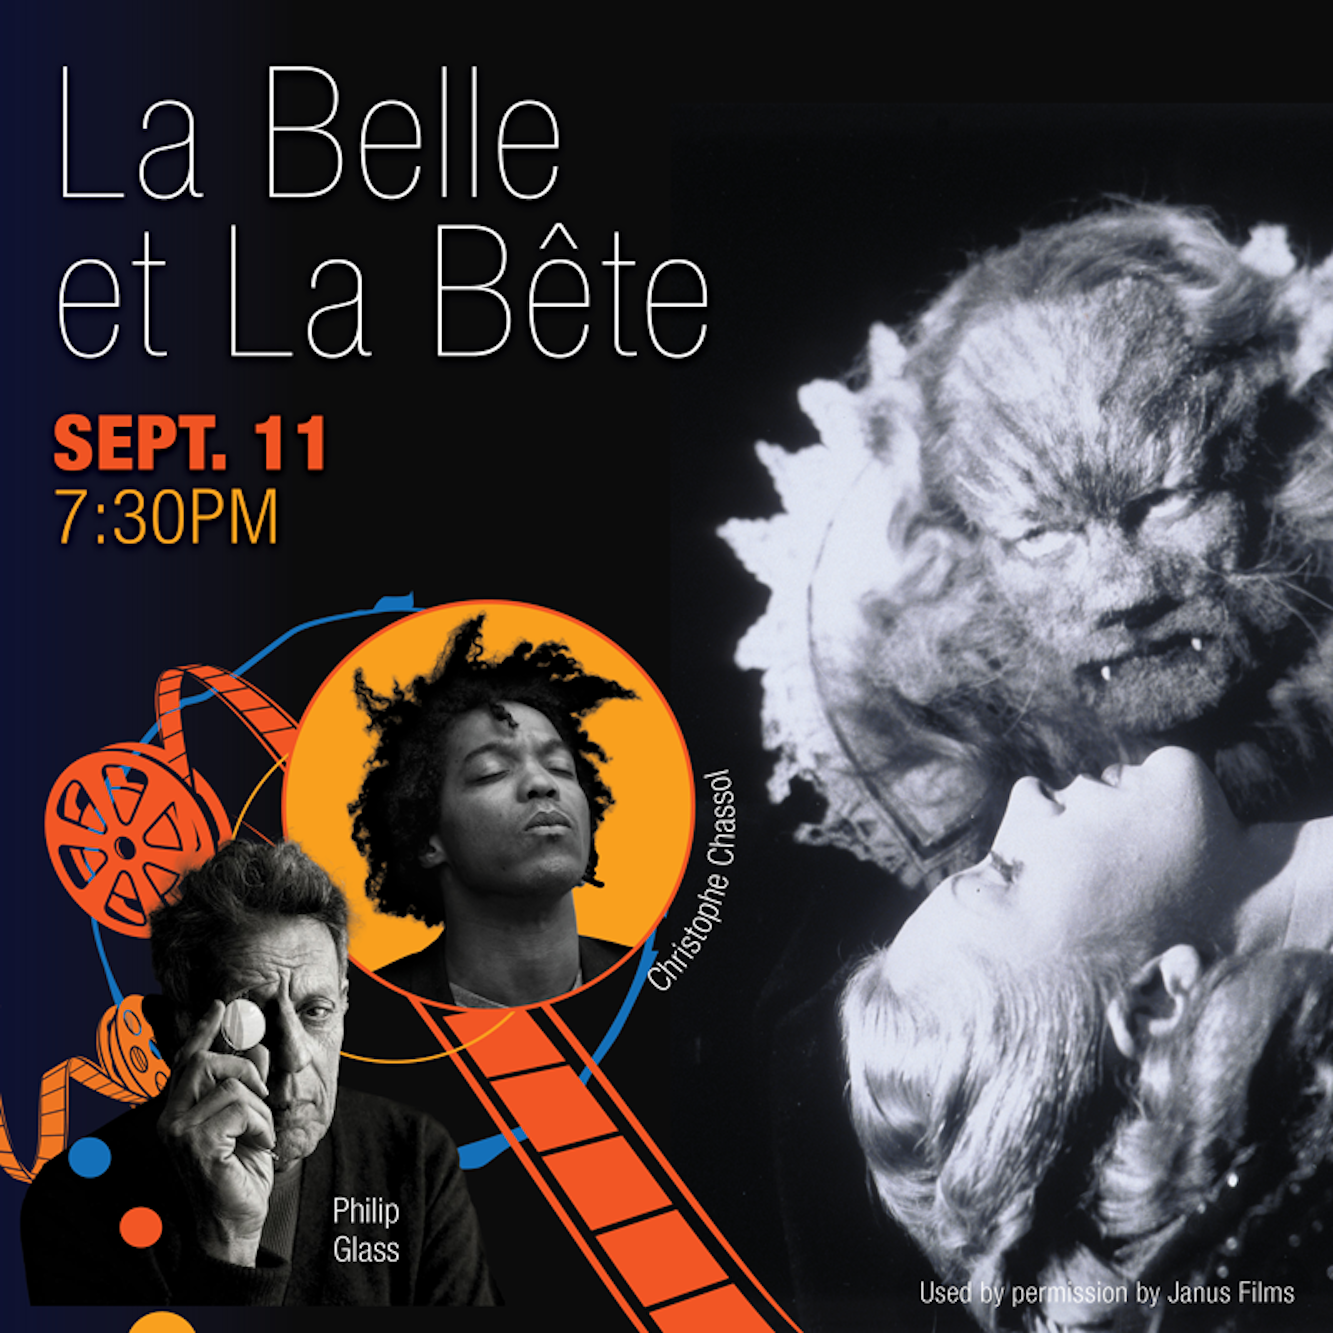 La Belle et La Bete. Photo used with permission by Janus Films.